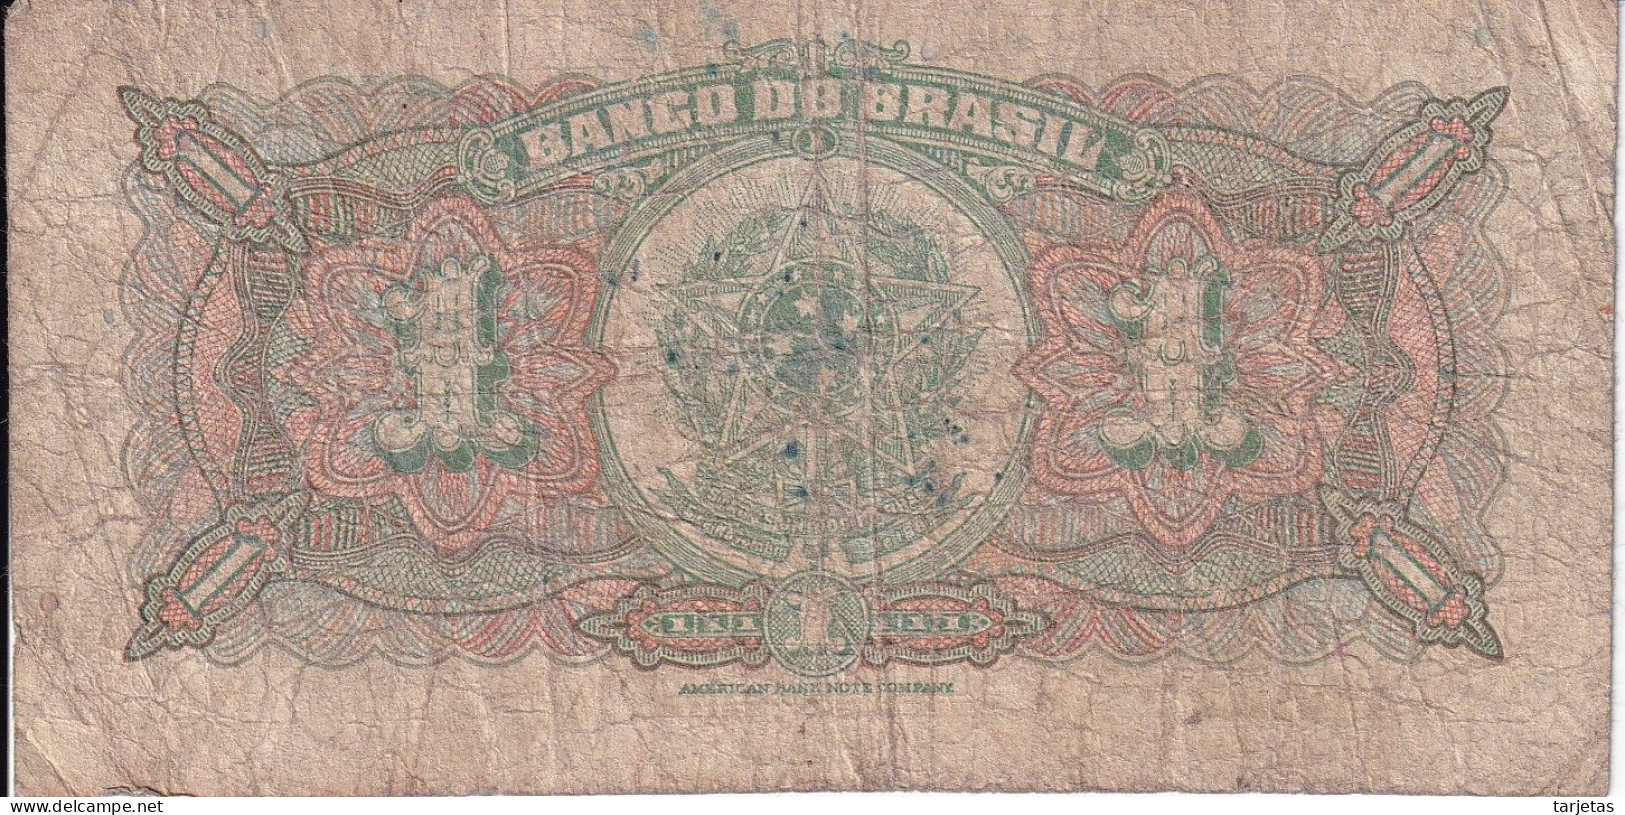 BILLETE DE BRASIL DE 1000 REIS DEL AÑO 1923 (BANK NOTE) - Brasile